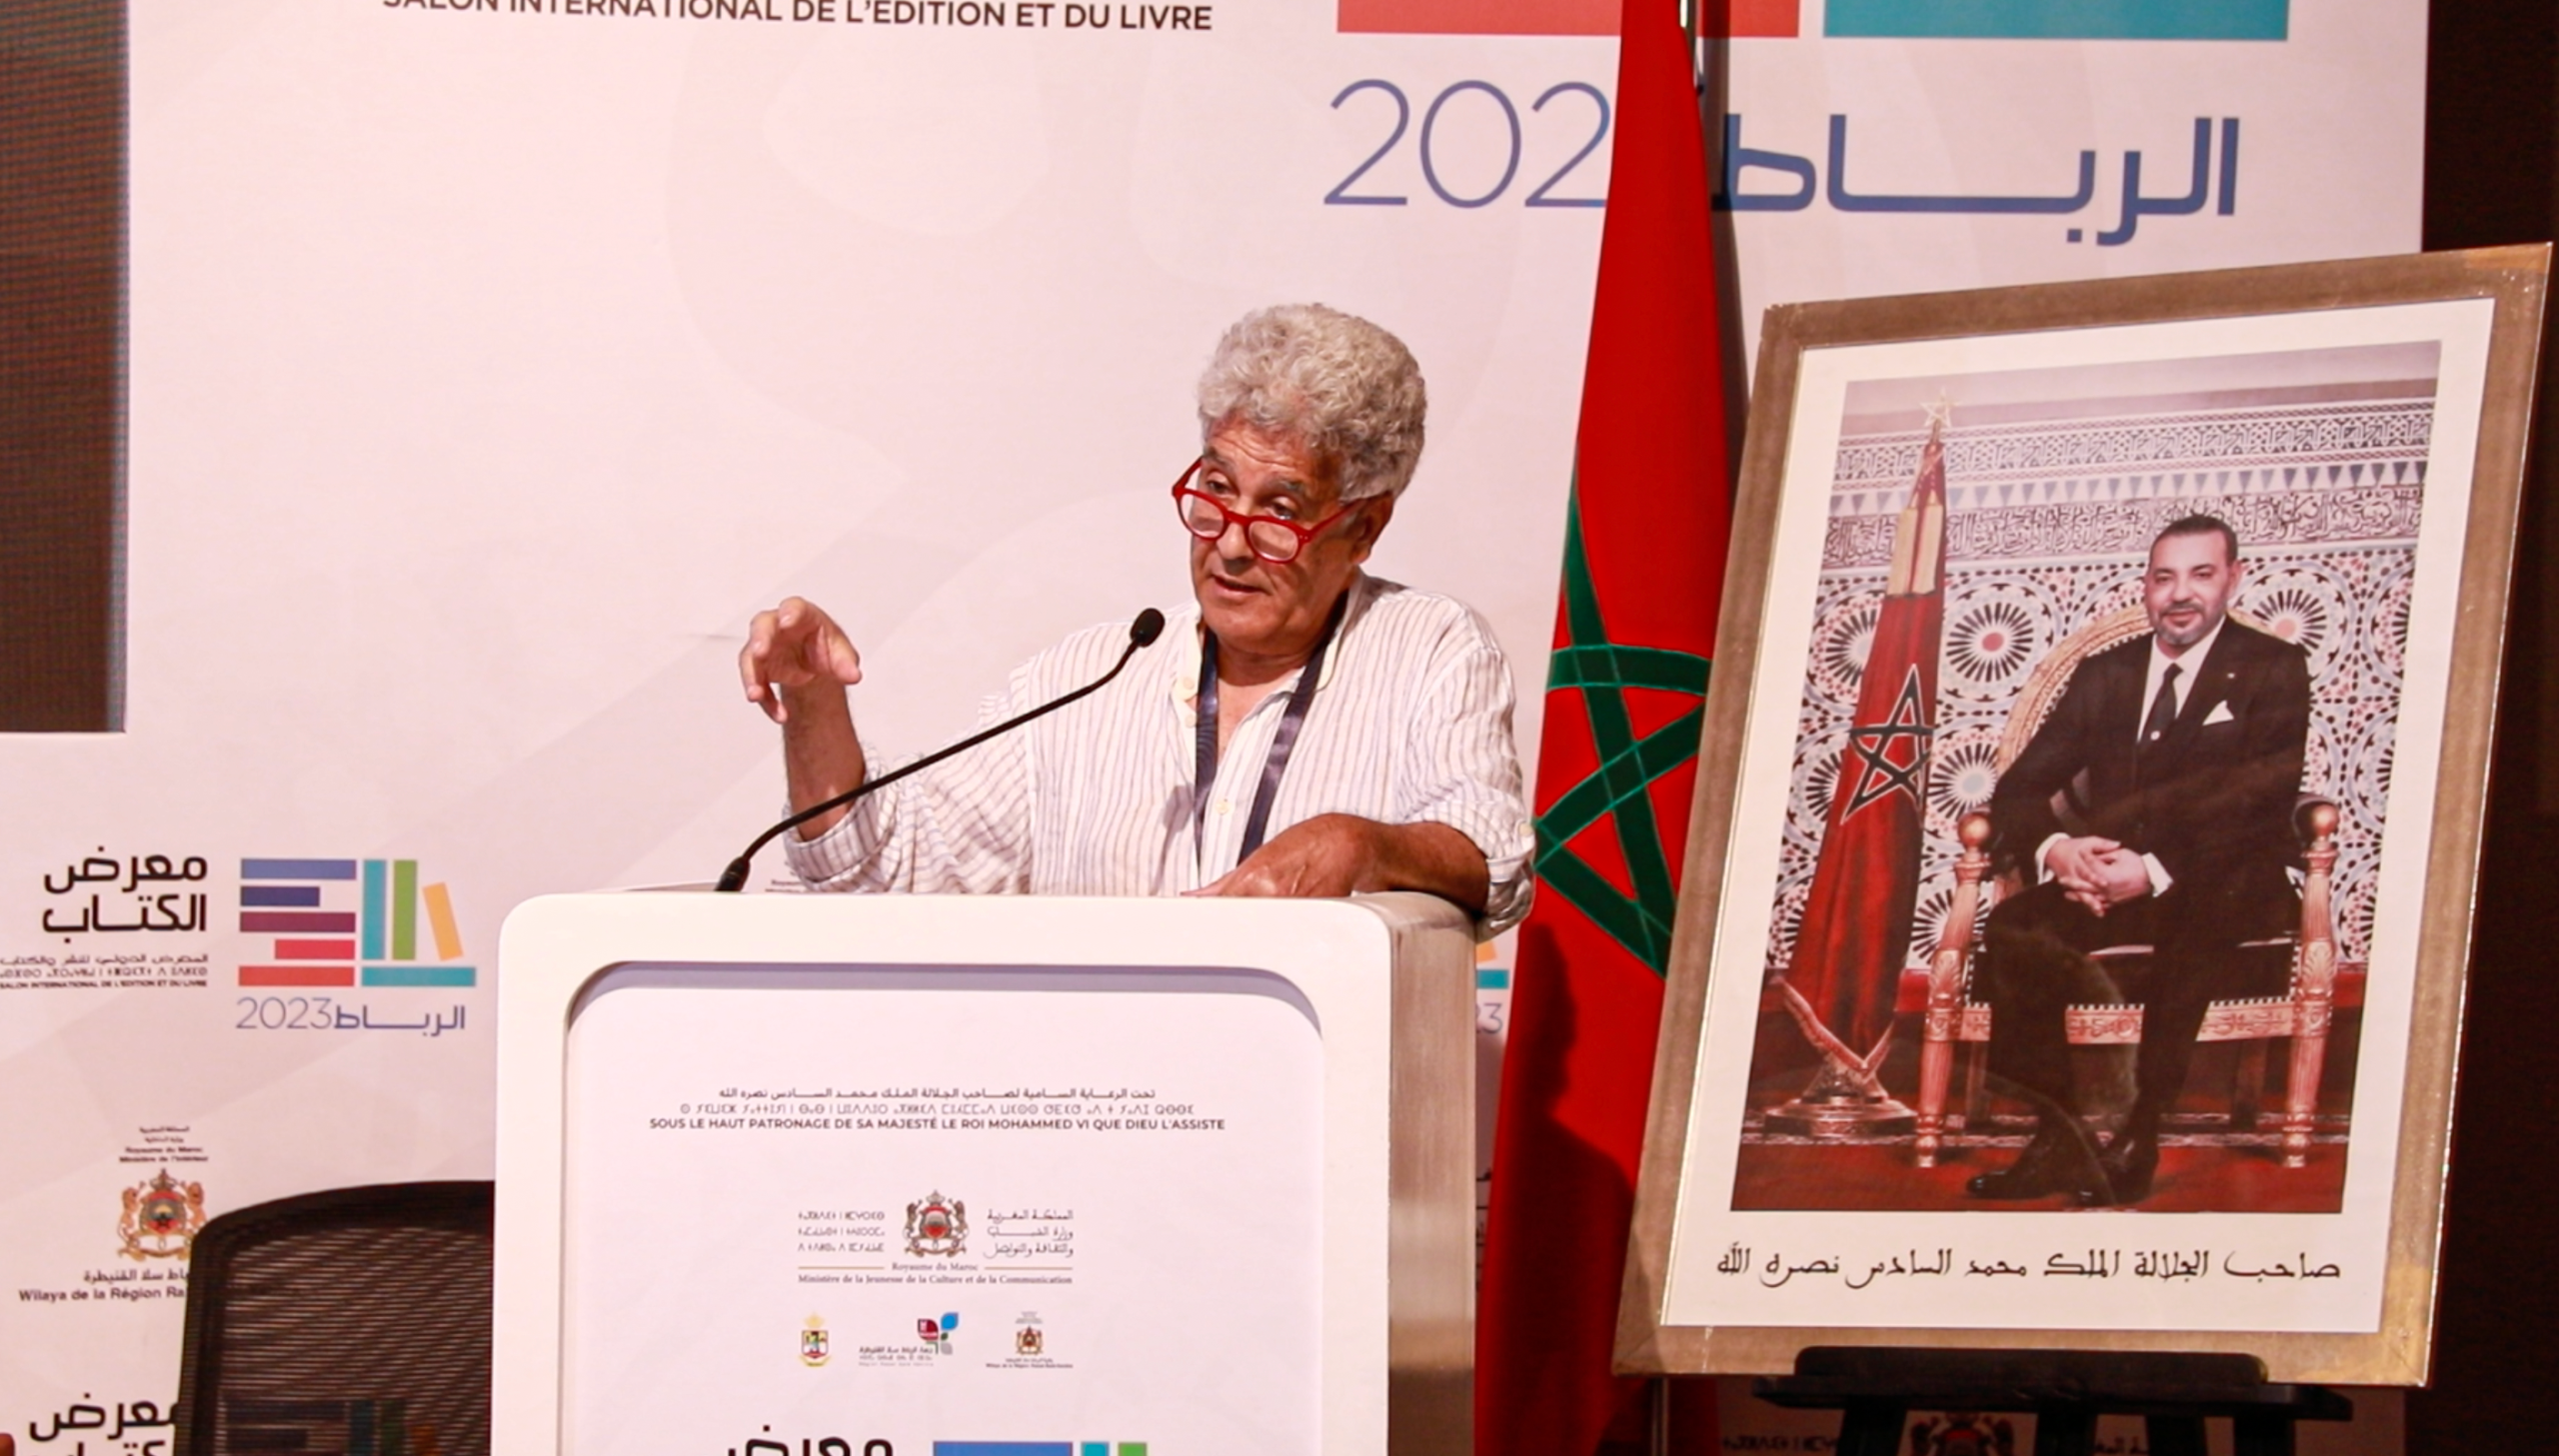 الطوزي يفكك تصور المغاربة للعلاقة مع الدولة ويدعو لتحمل المسؤولية في تمويل الحماية الاجتماعية